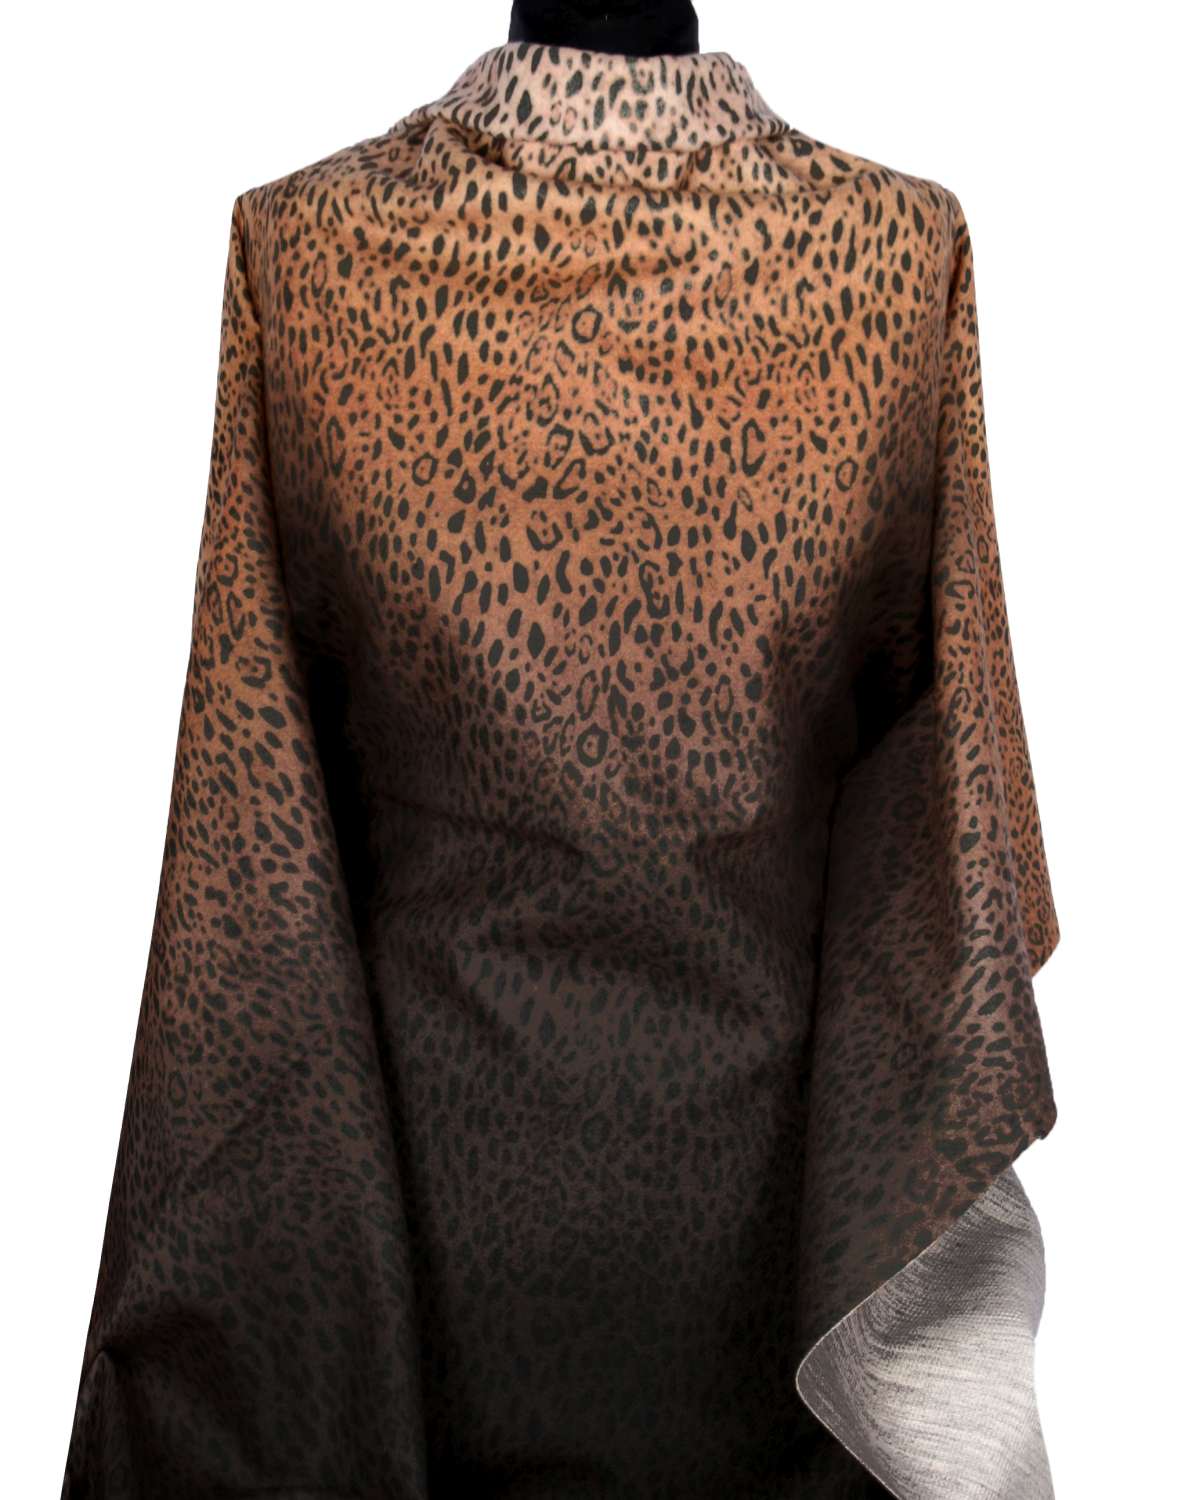 Flau vzor leopard s farebnm prechodom - Kliknutm na obrzok zatvorte -